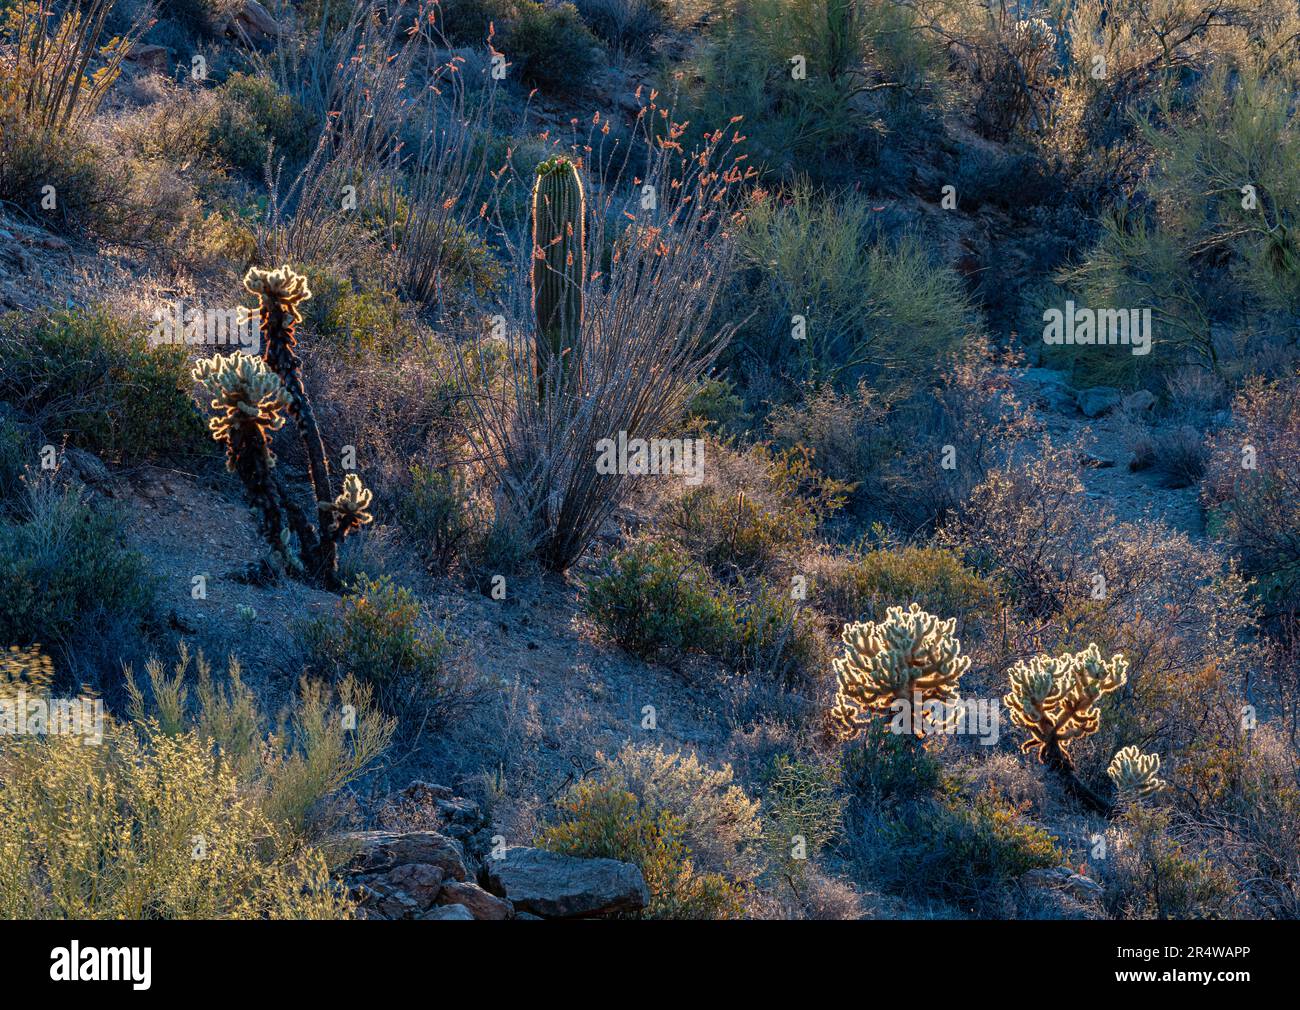 Teddybär oder Jumping Cholla, zusammen mit Saguaro Cactus, Ocotillo und anderen Wüstensträuchern, werden von der untergehenden Sonne an der Gates Pass Road in Tucs beleuchtet Stockfoto